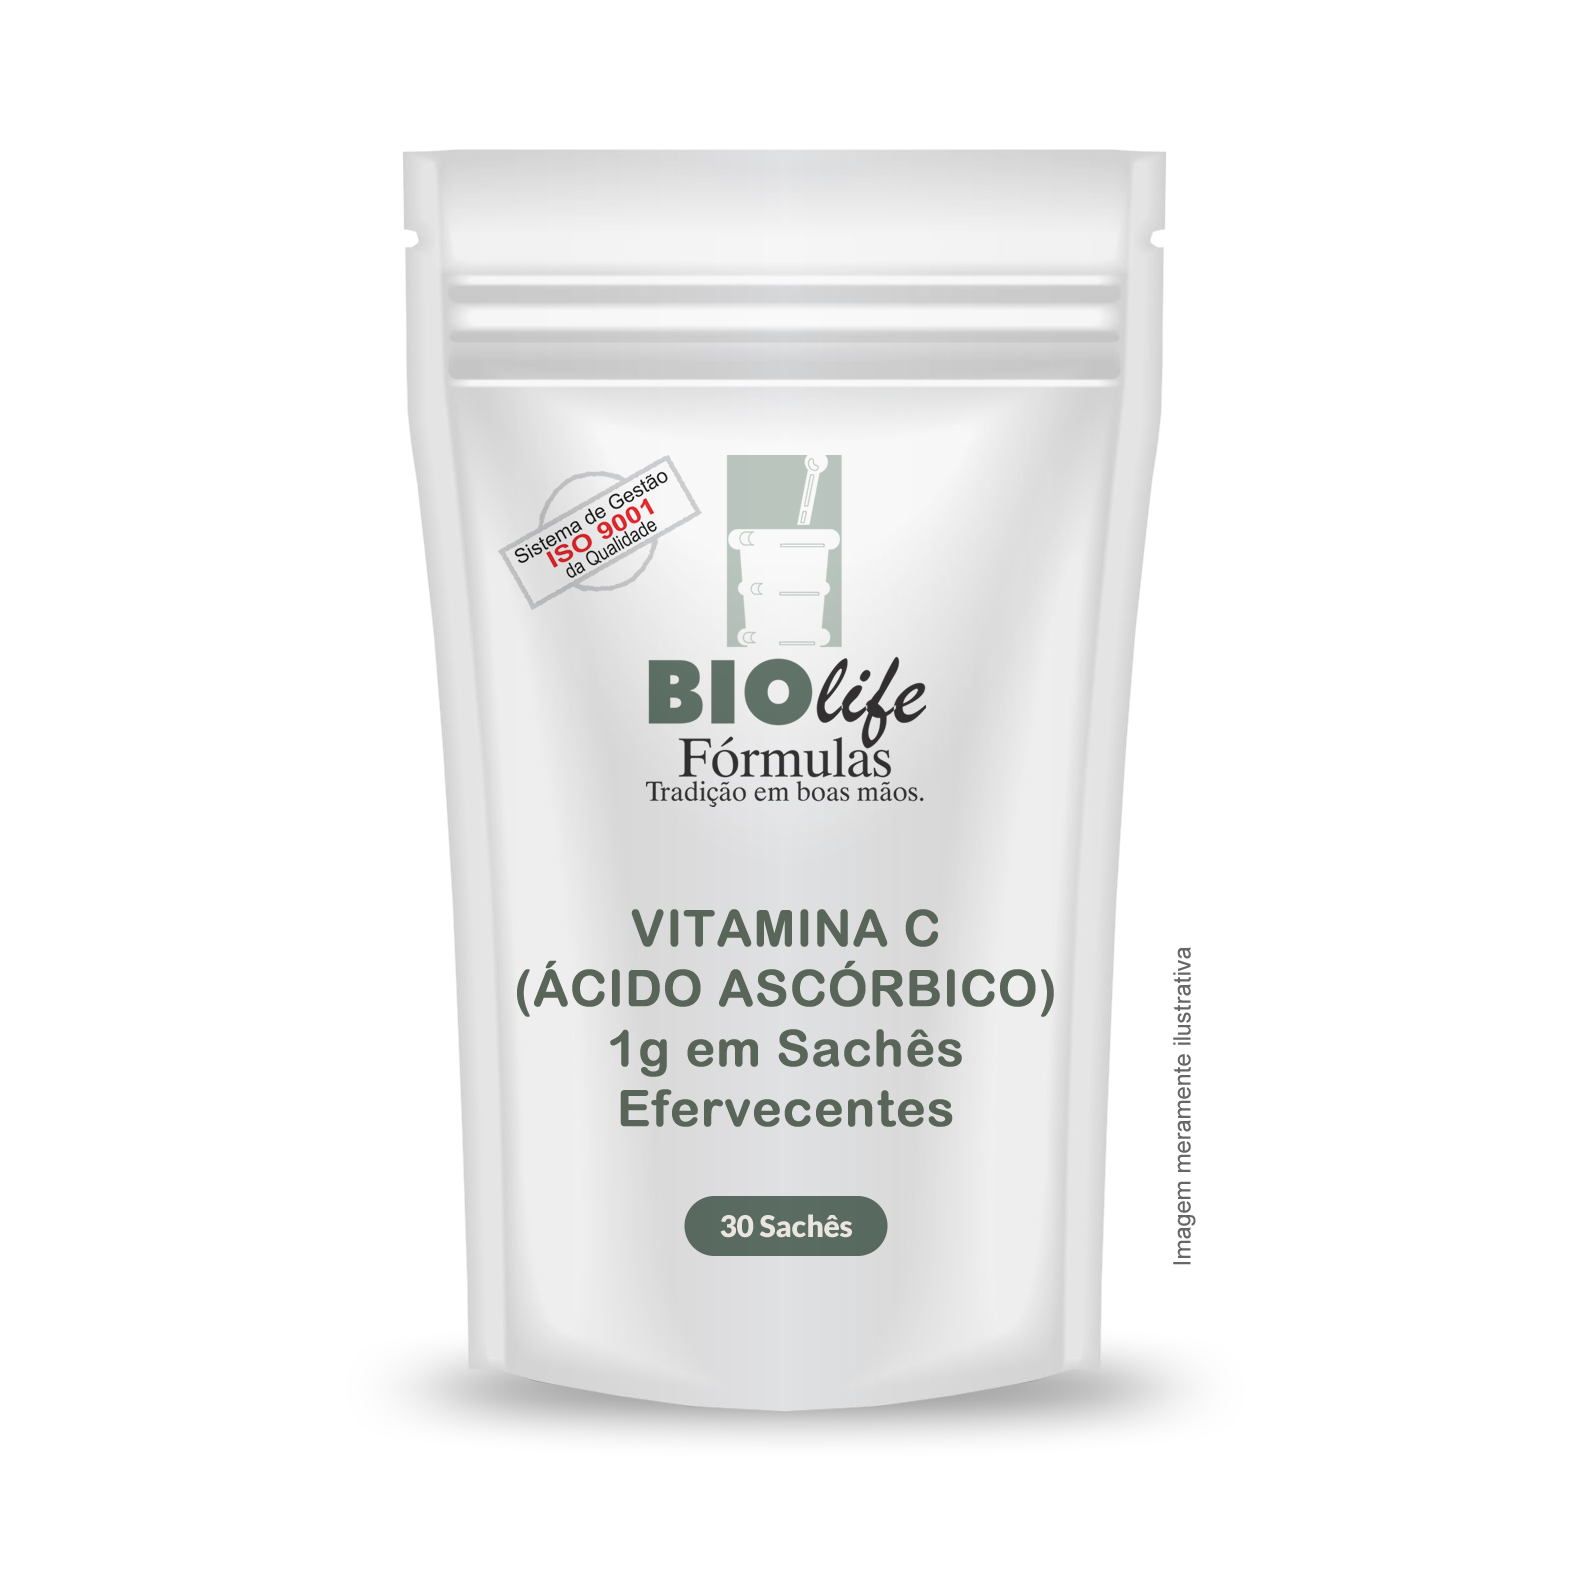 VITAMINA C - ( ÁCIDO ASCÓRBICO ) - 1g com 30 Sachês Efervecentes - BioLife